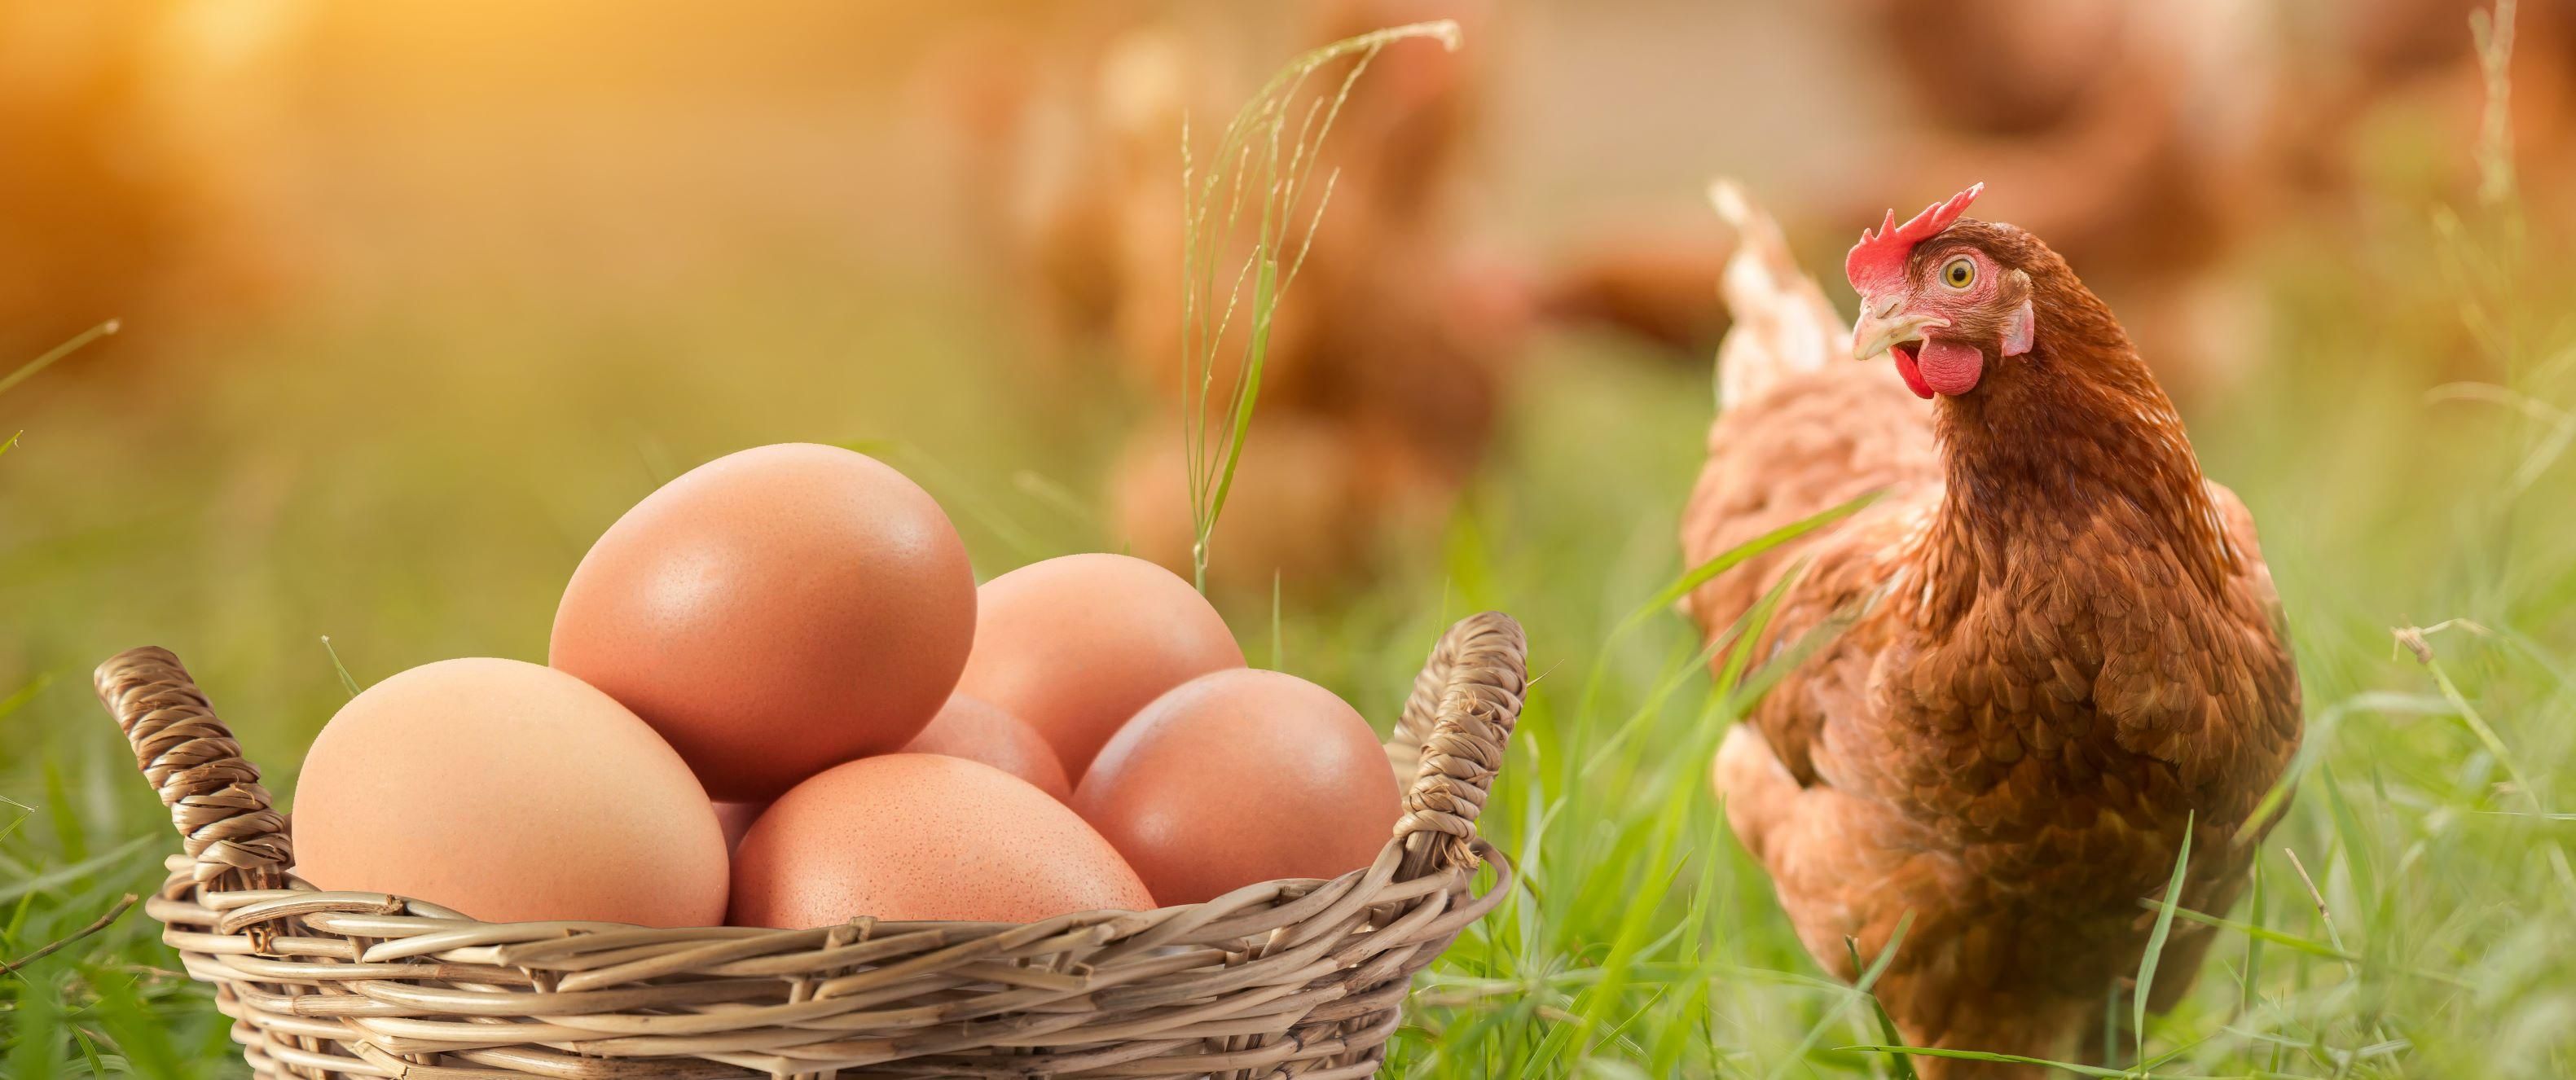 Az ukrajnai háború és a madárinfluenza is bekavart a baromfihús- és tojáspiacnak